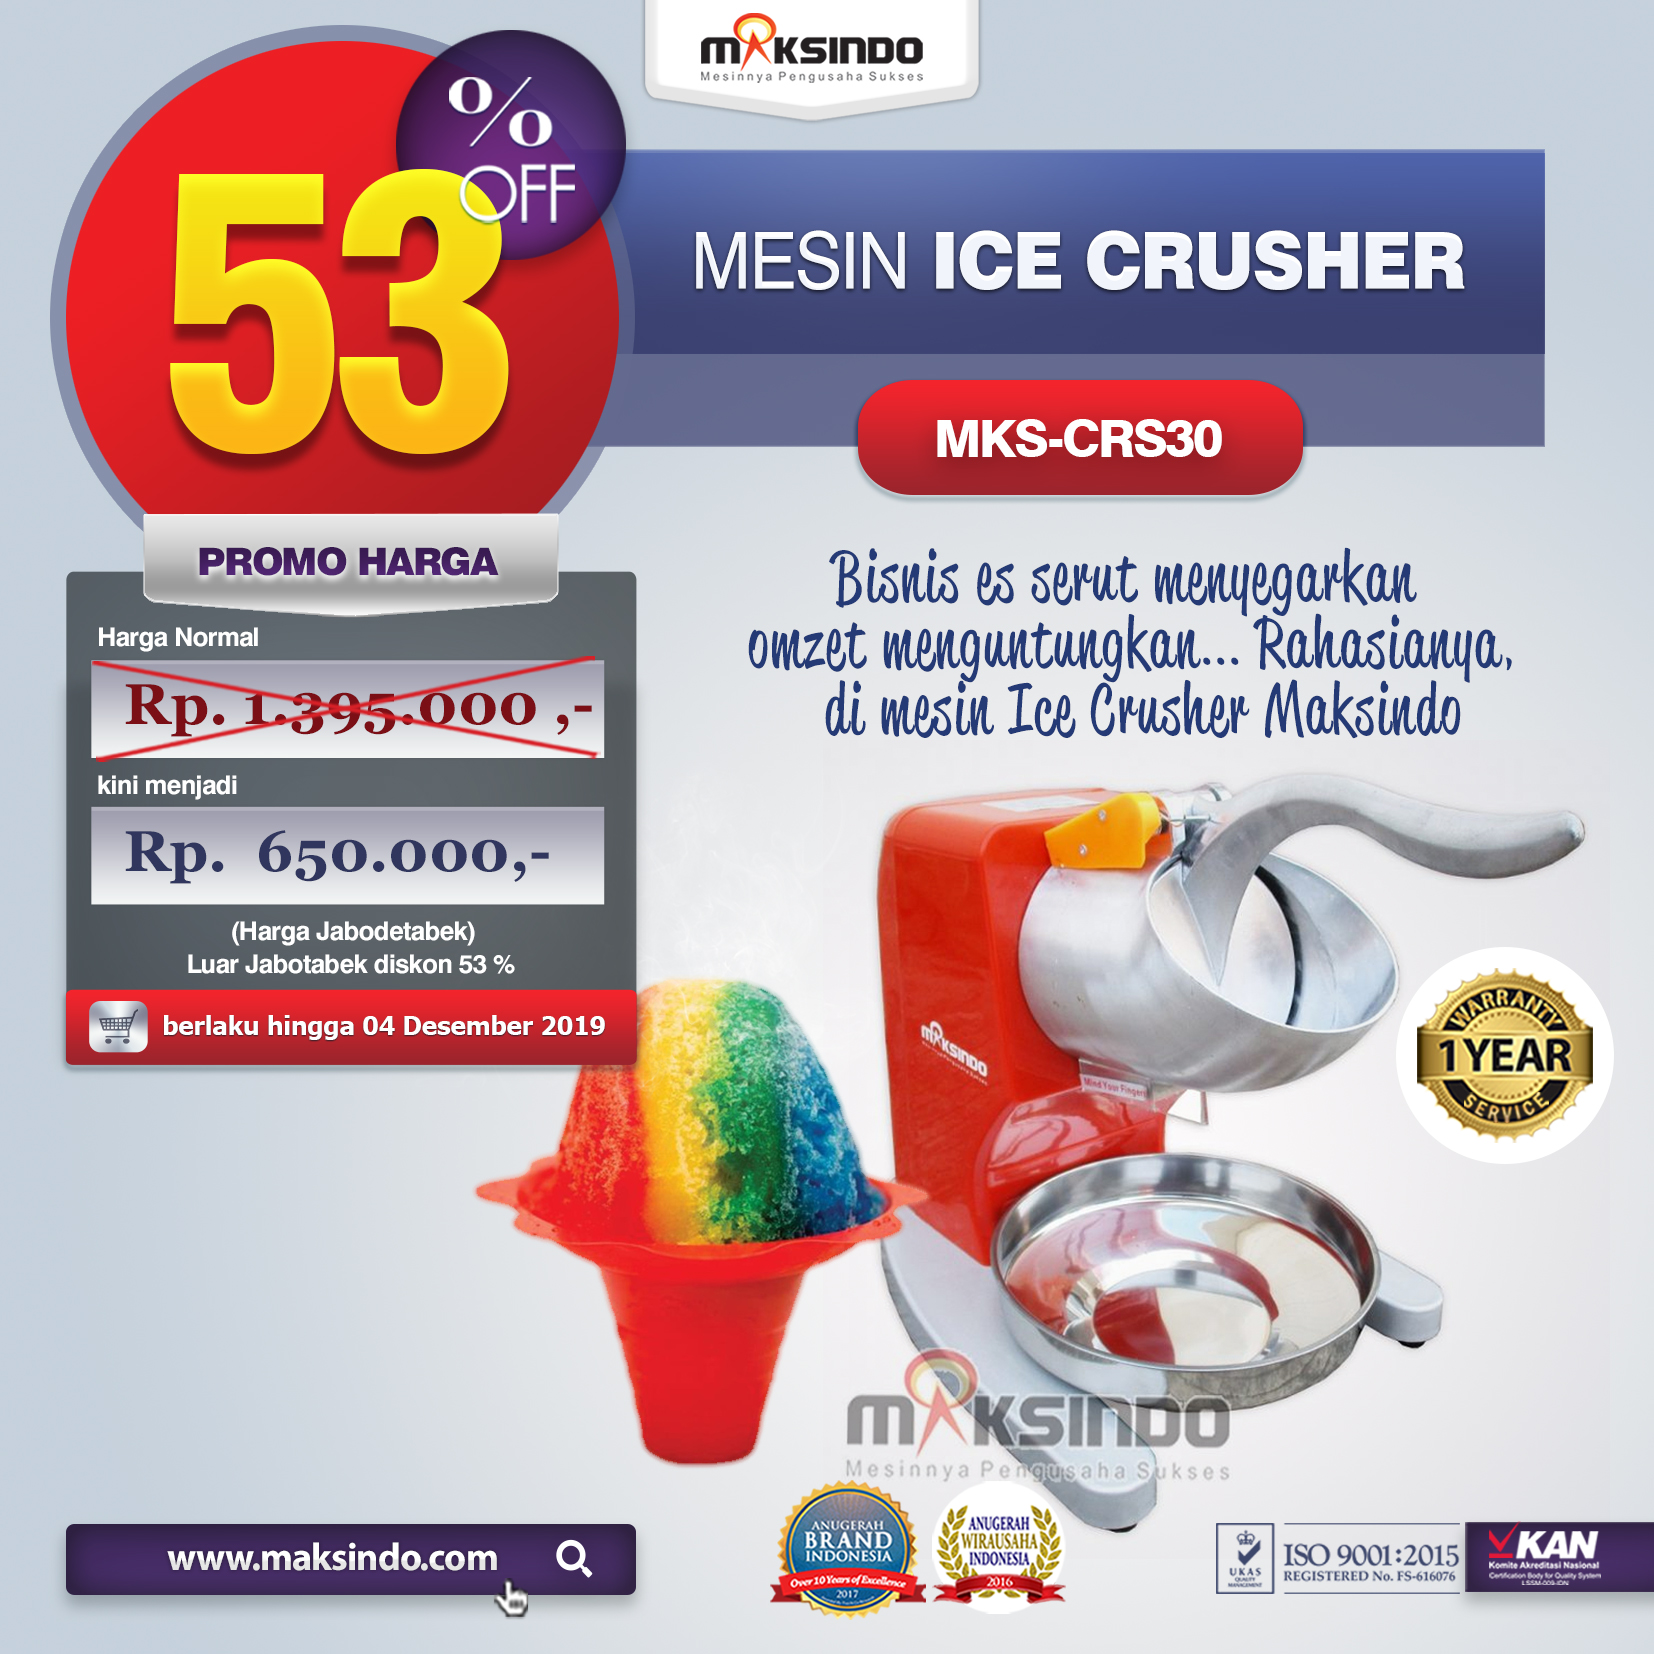 Jual Mesin Ice Crusher MKS-CRS30 di Pekanbaru